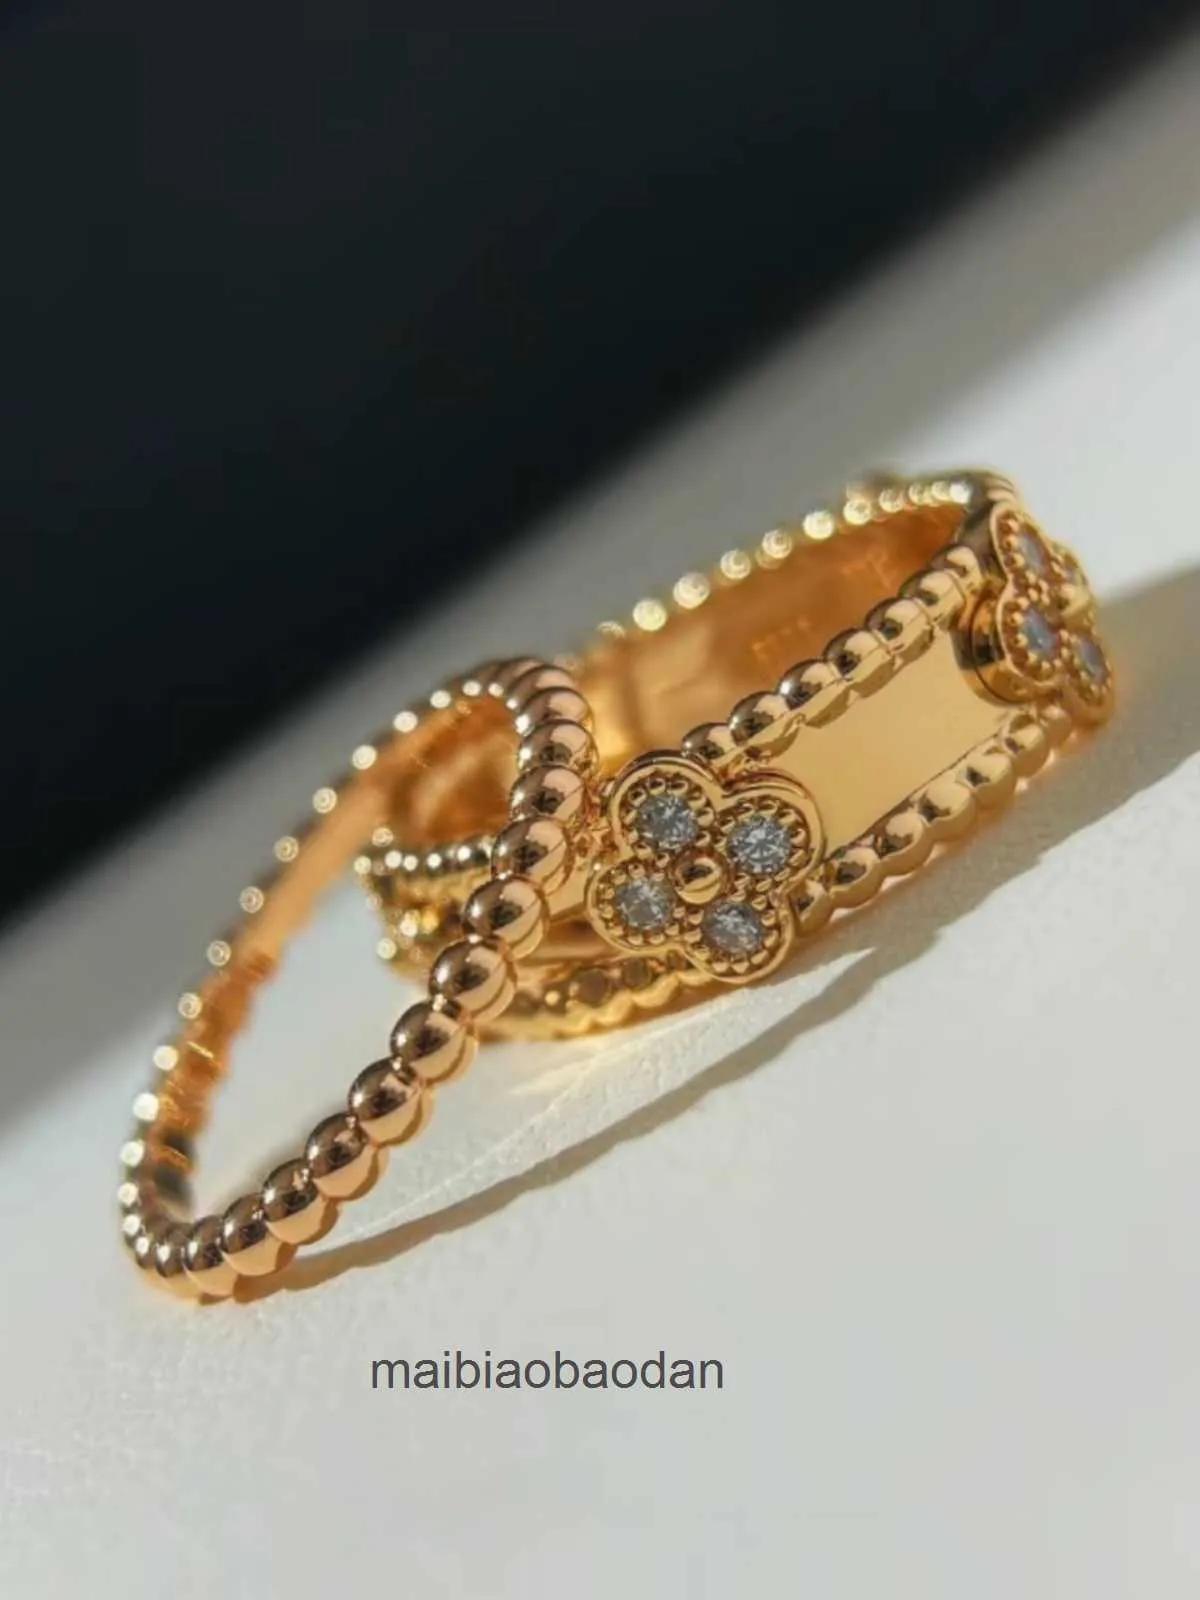 Projektant luksusowy pierścień biżuterii vancllf seksowne pikantne pary dziewczyny z kalejdoskopem szerokie i wąskie wydanie pełne diament